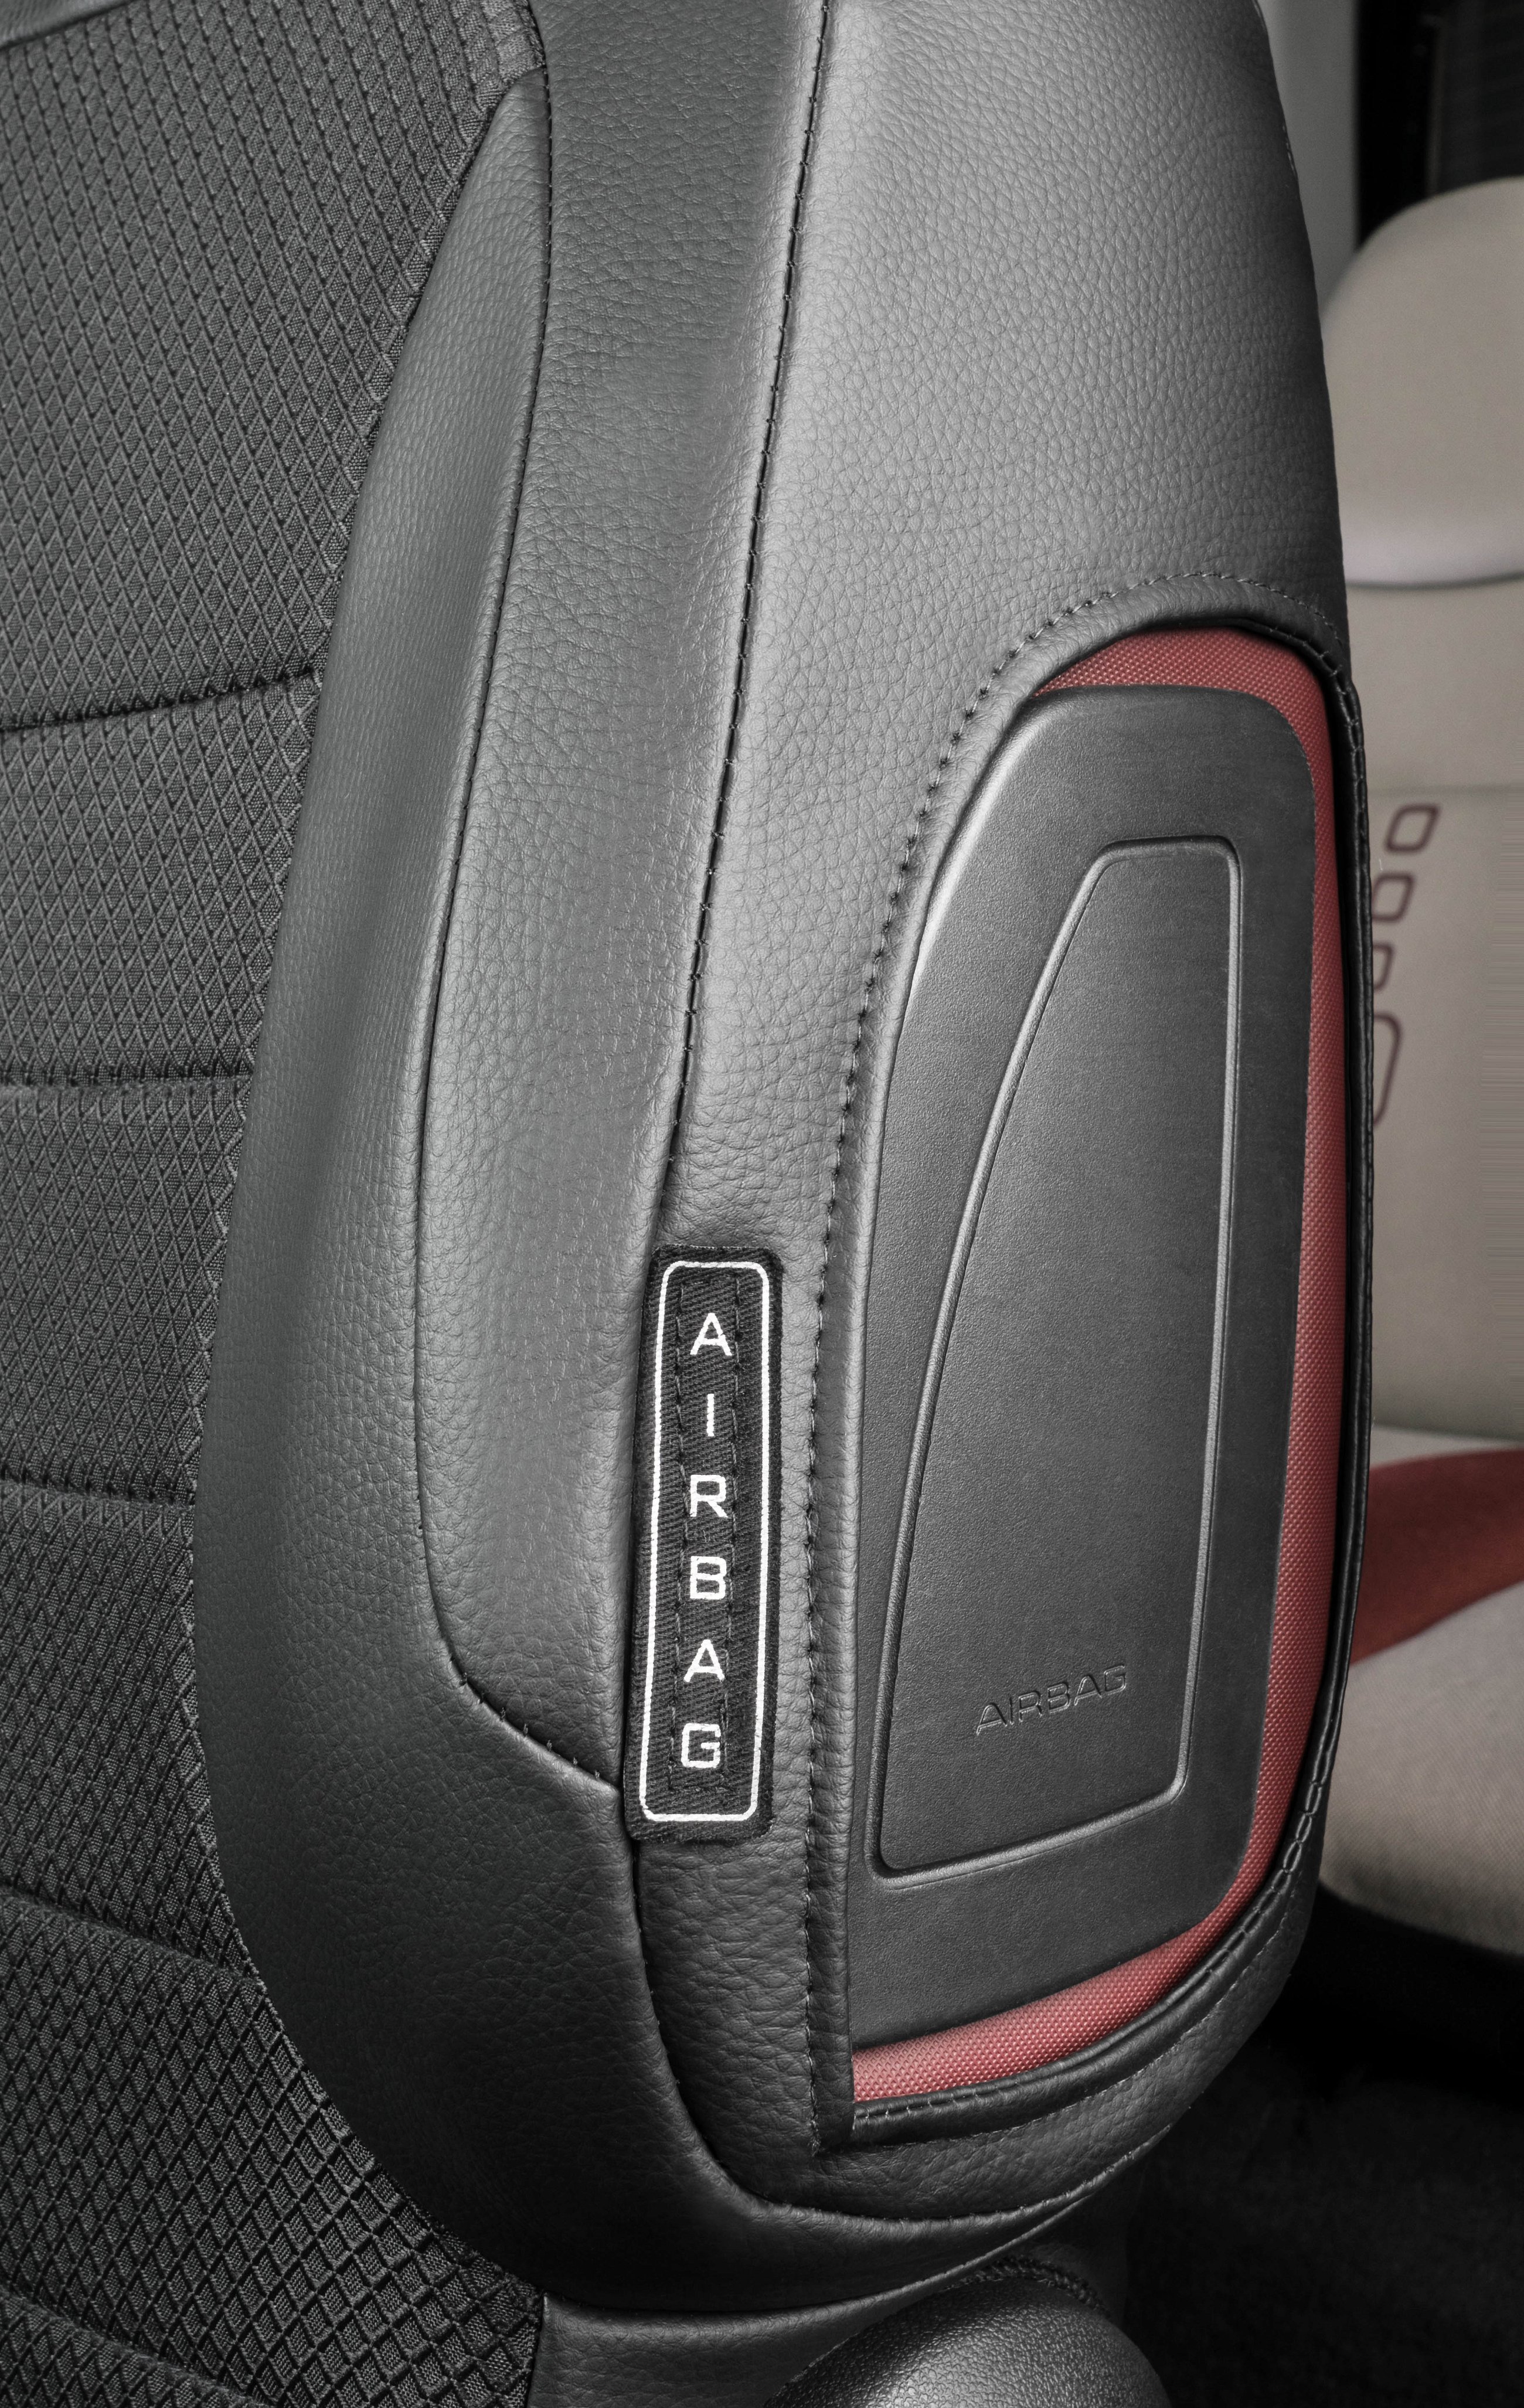 Premium autozetelhoezen compatibel met Citroen Berlingo 2 compatibel met 2 enkele zetels vooraan gemaakt van kunstleder vanaf bouwjaar 2009 - Vandaag